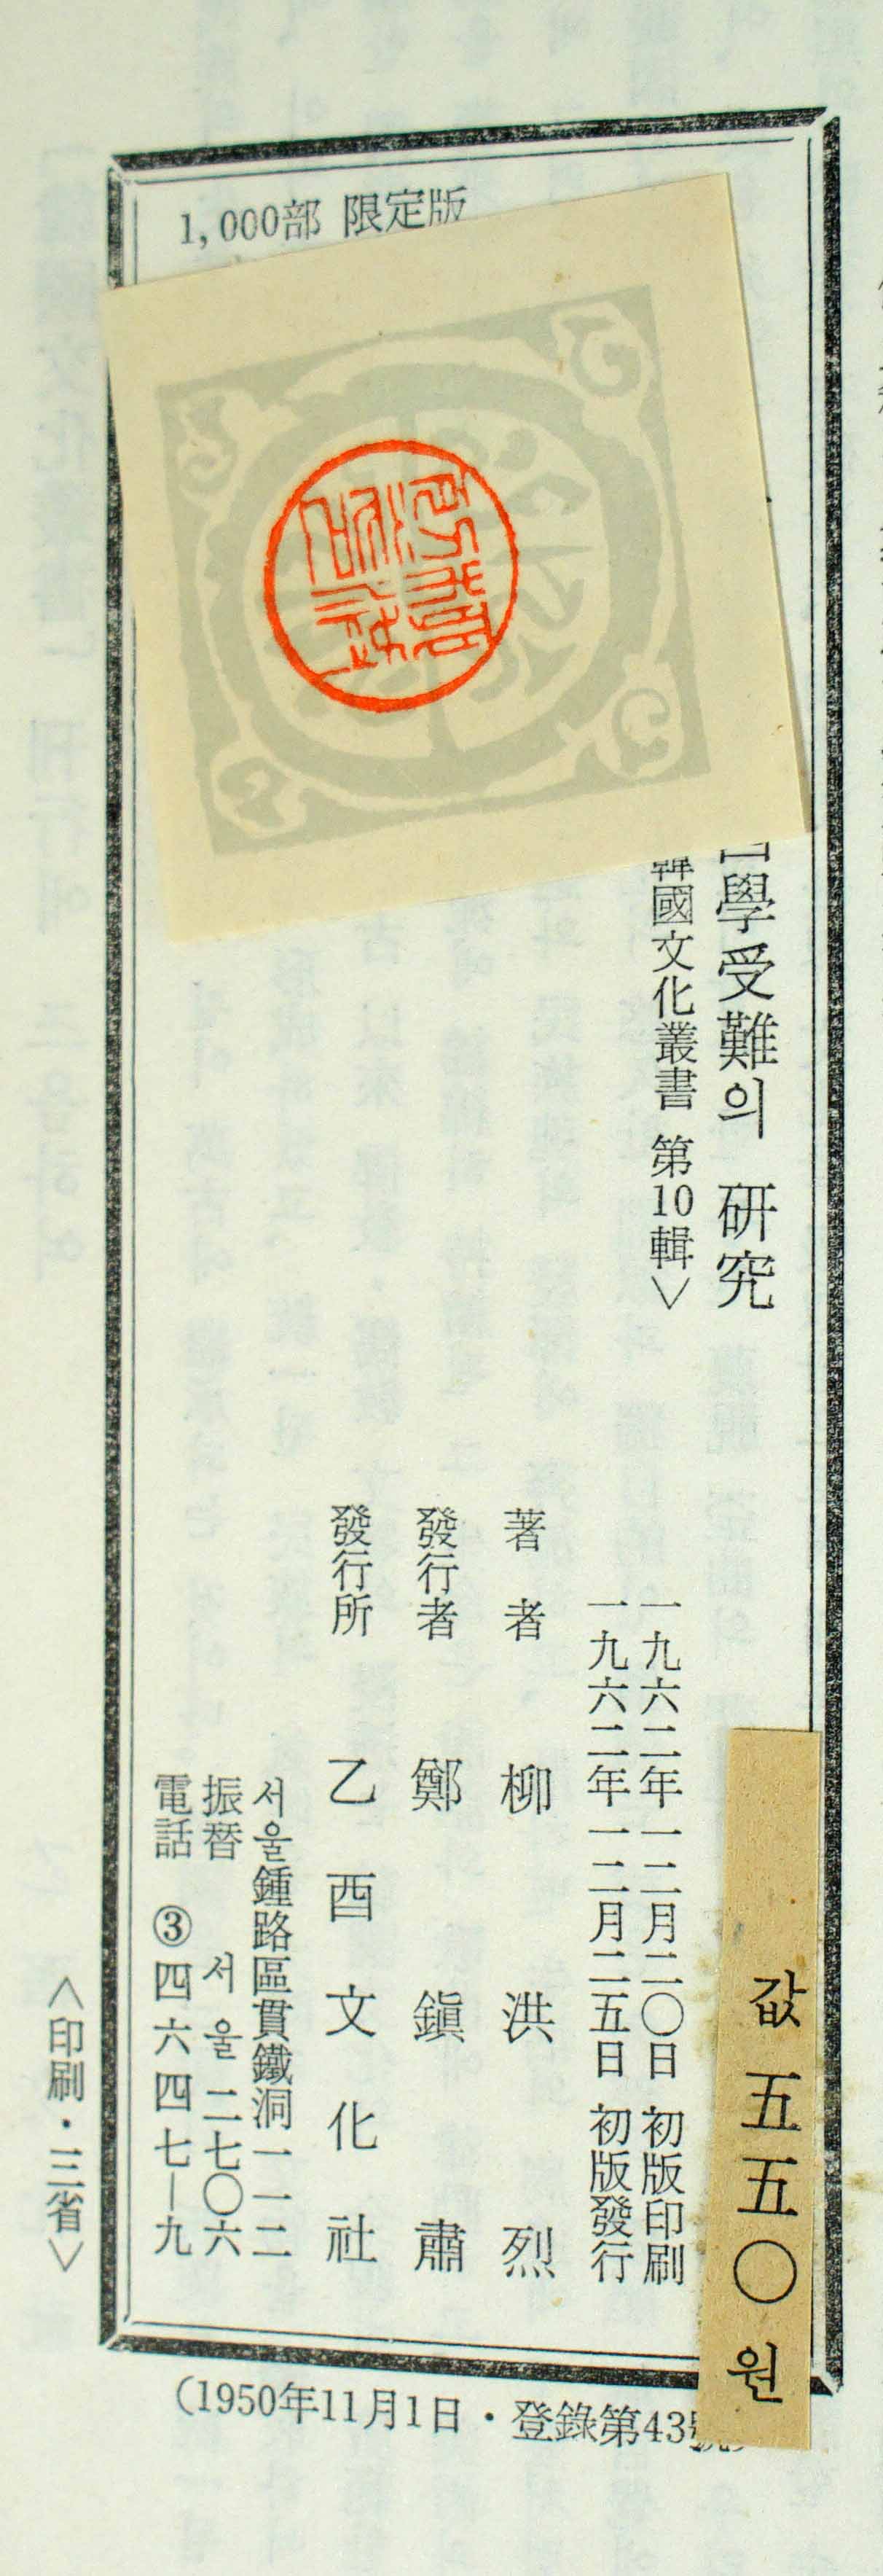 고종치하 서학수난의연구/1962년 초판